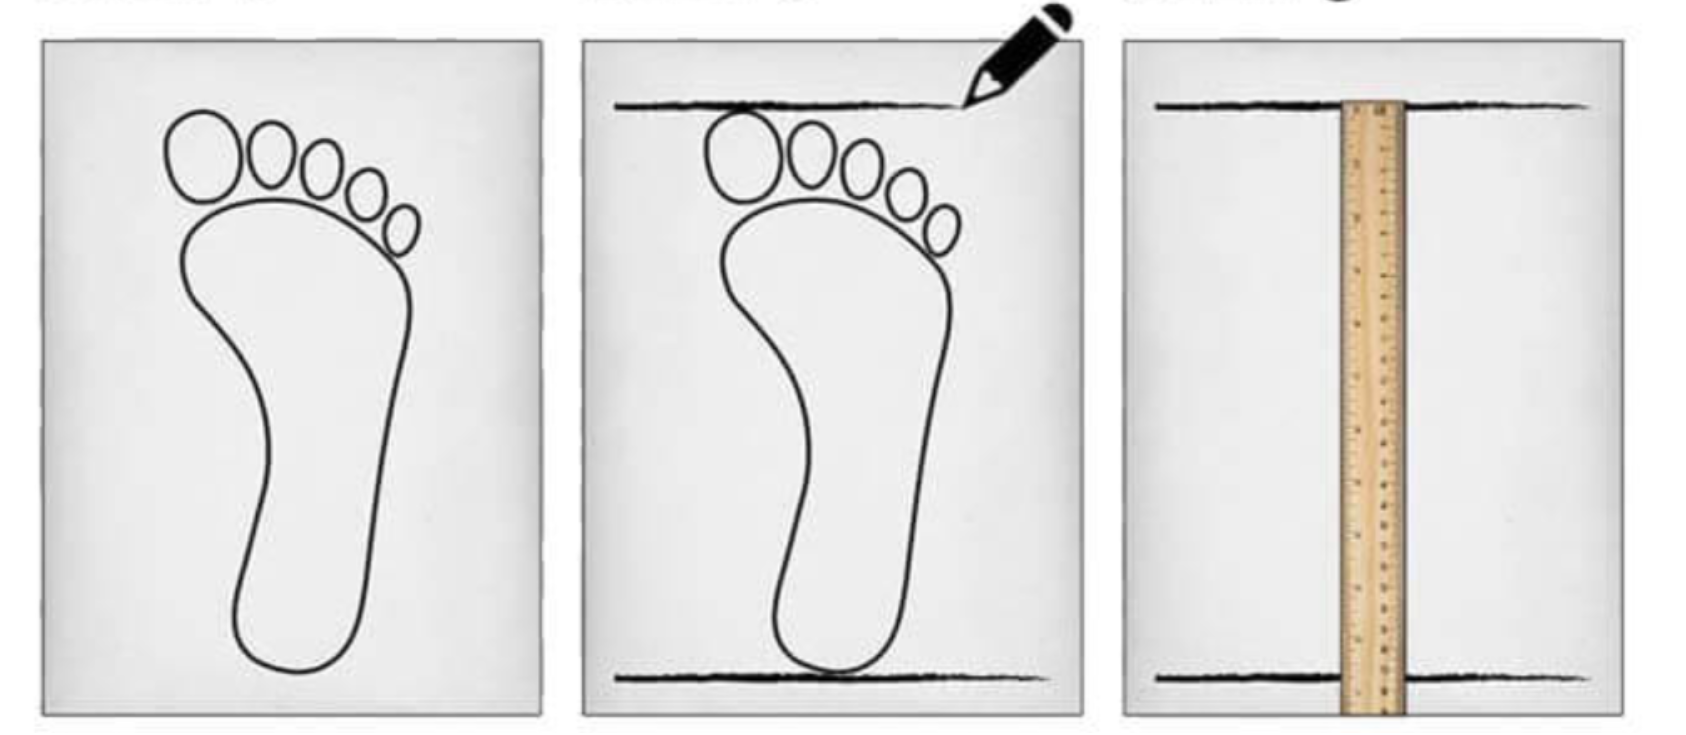 comment mesurer votre pied